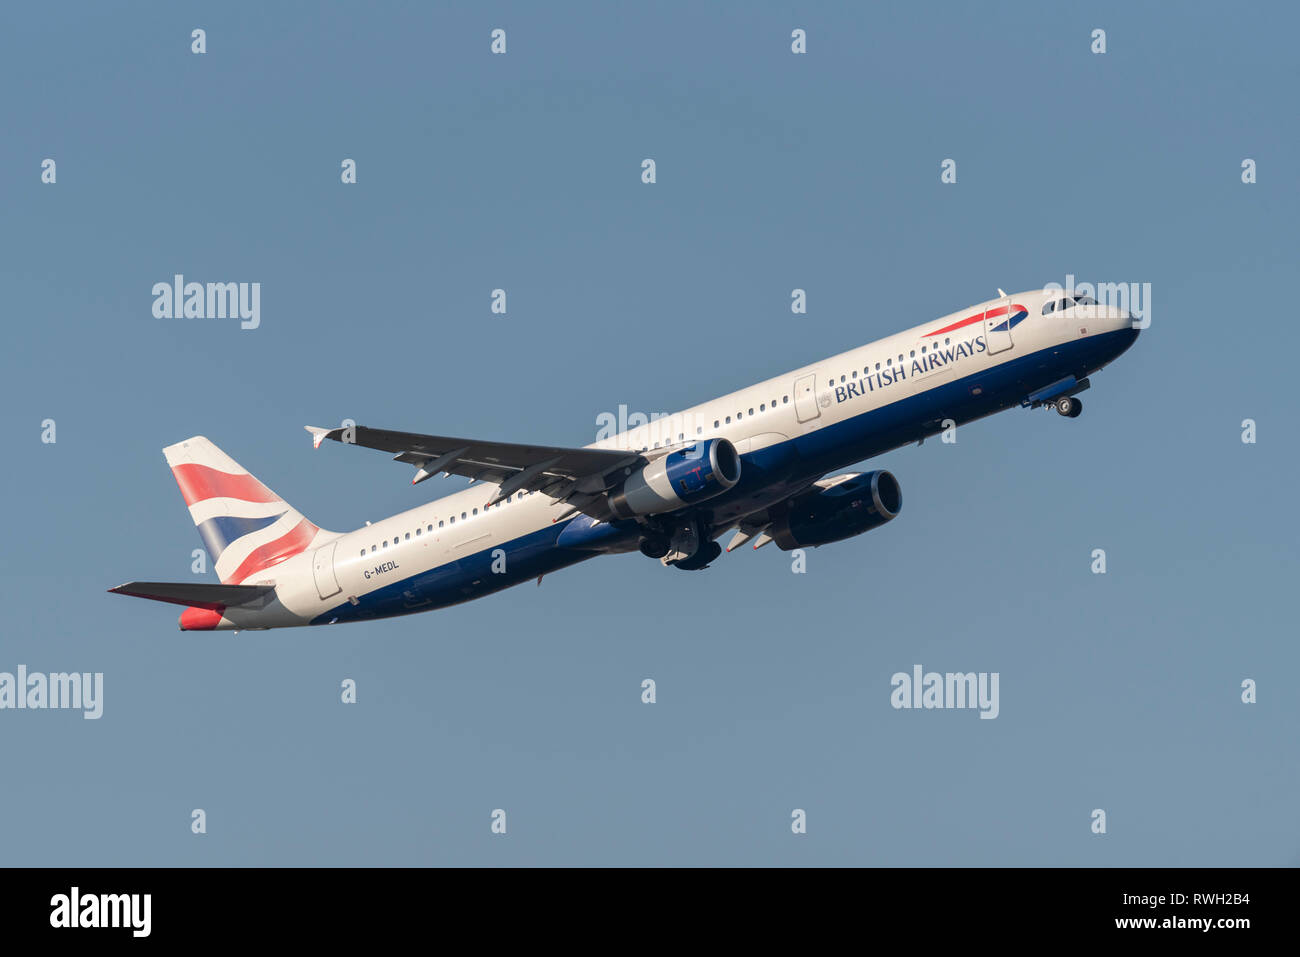 British Airways Airbus A321 Jet Flugzeug G-MEDL startet vom Flughafen London Heathrow, Großbritannien, in blauem Himmel Stockfoto